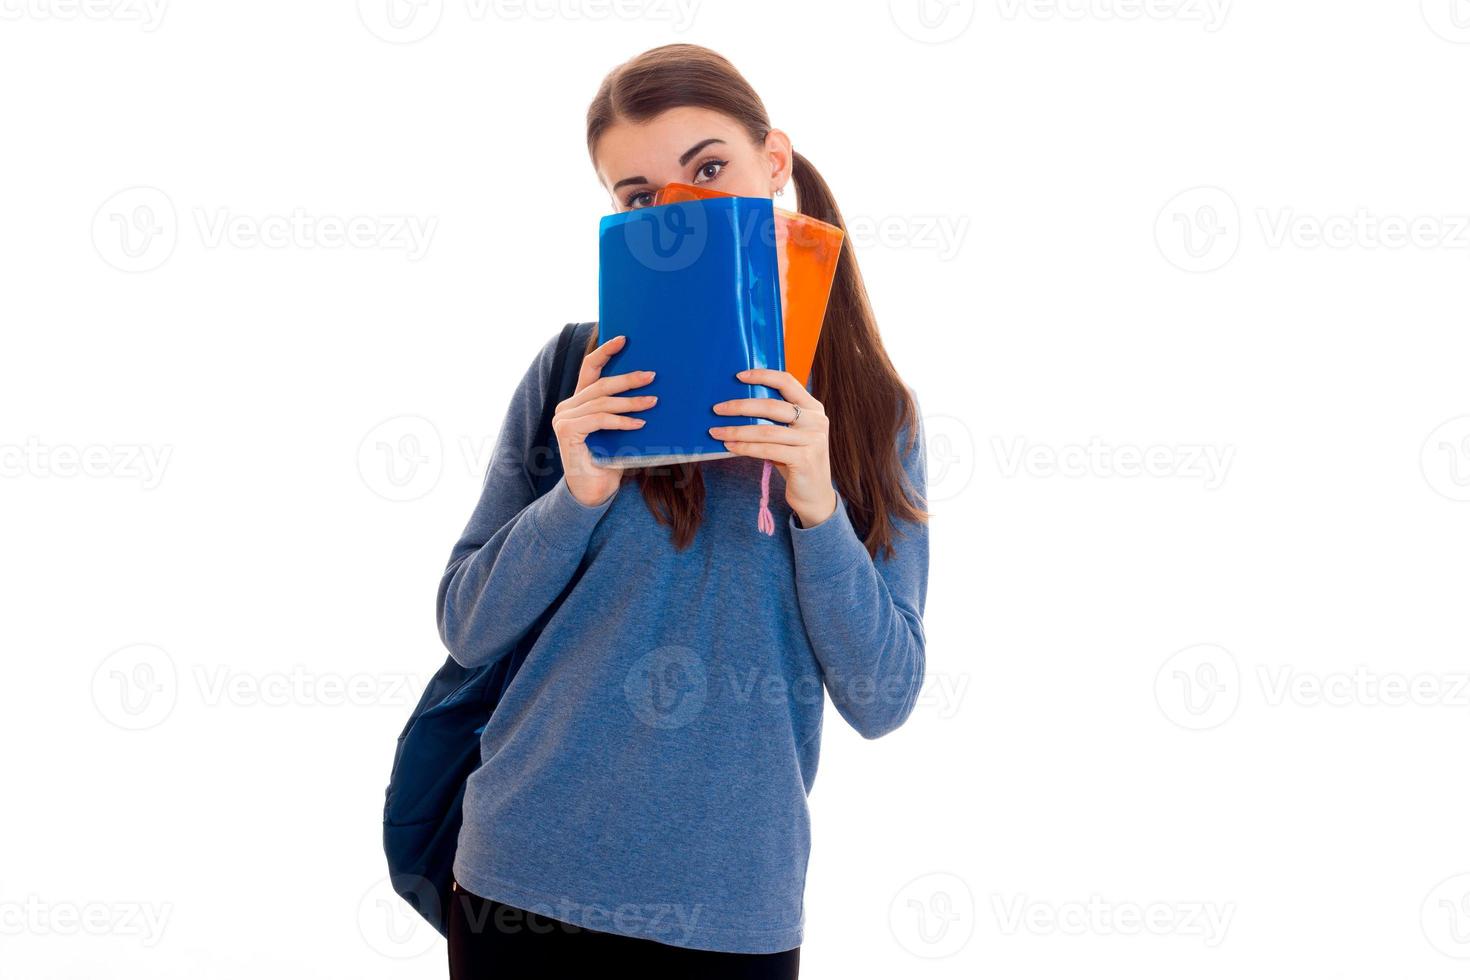 jovem estudante morena engraçada com mochila nos ombros, escondendo o rosto atrás de um livro isolado no fundo branco foto